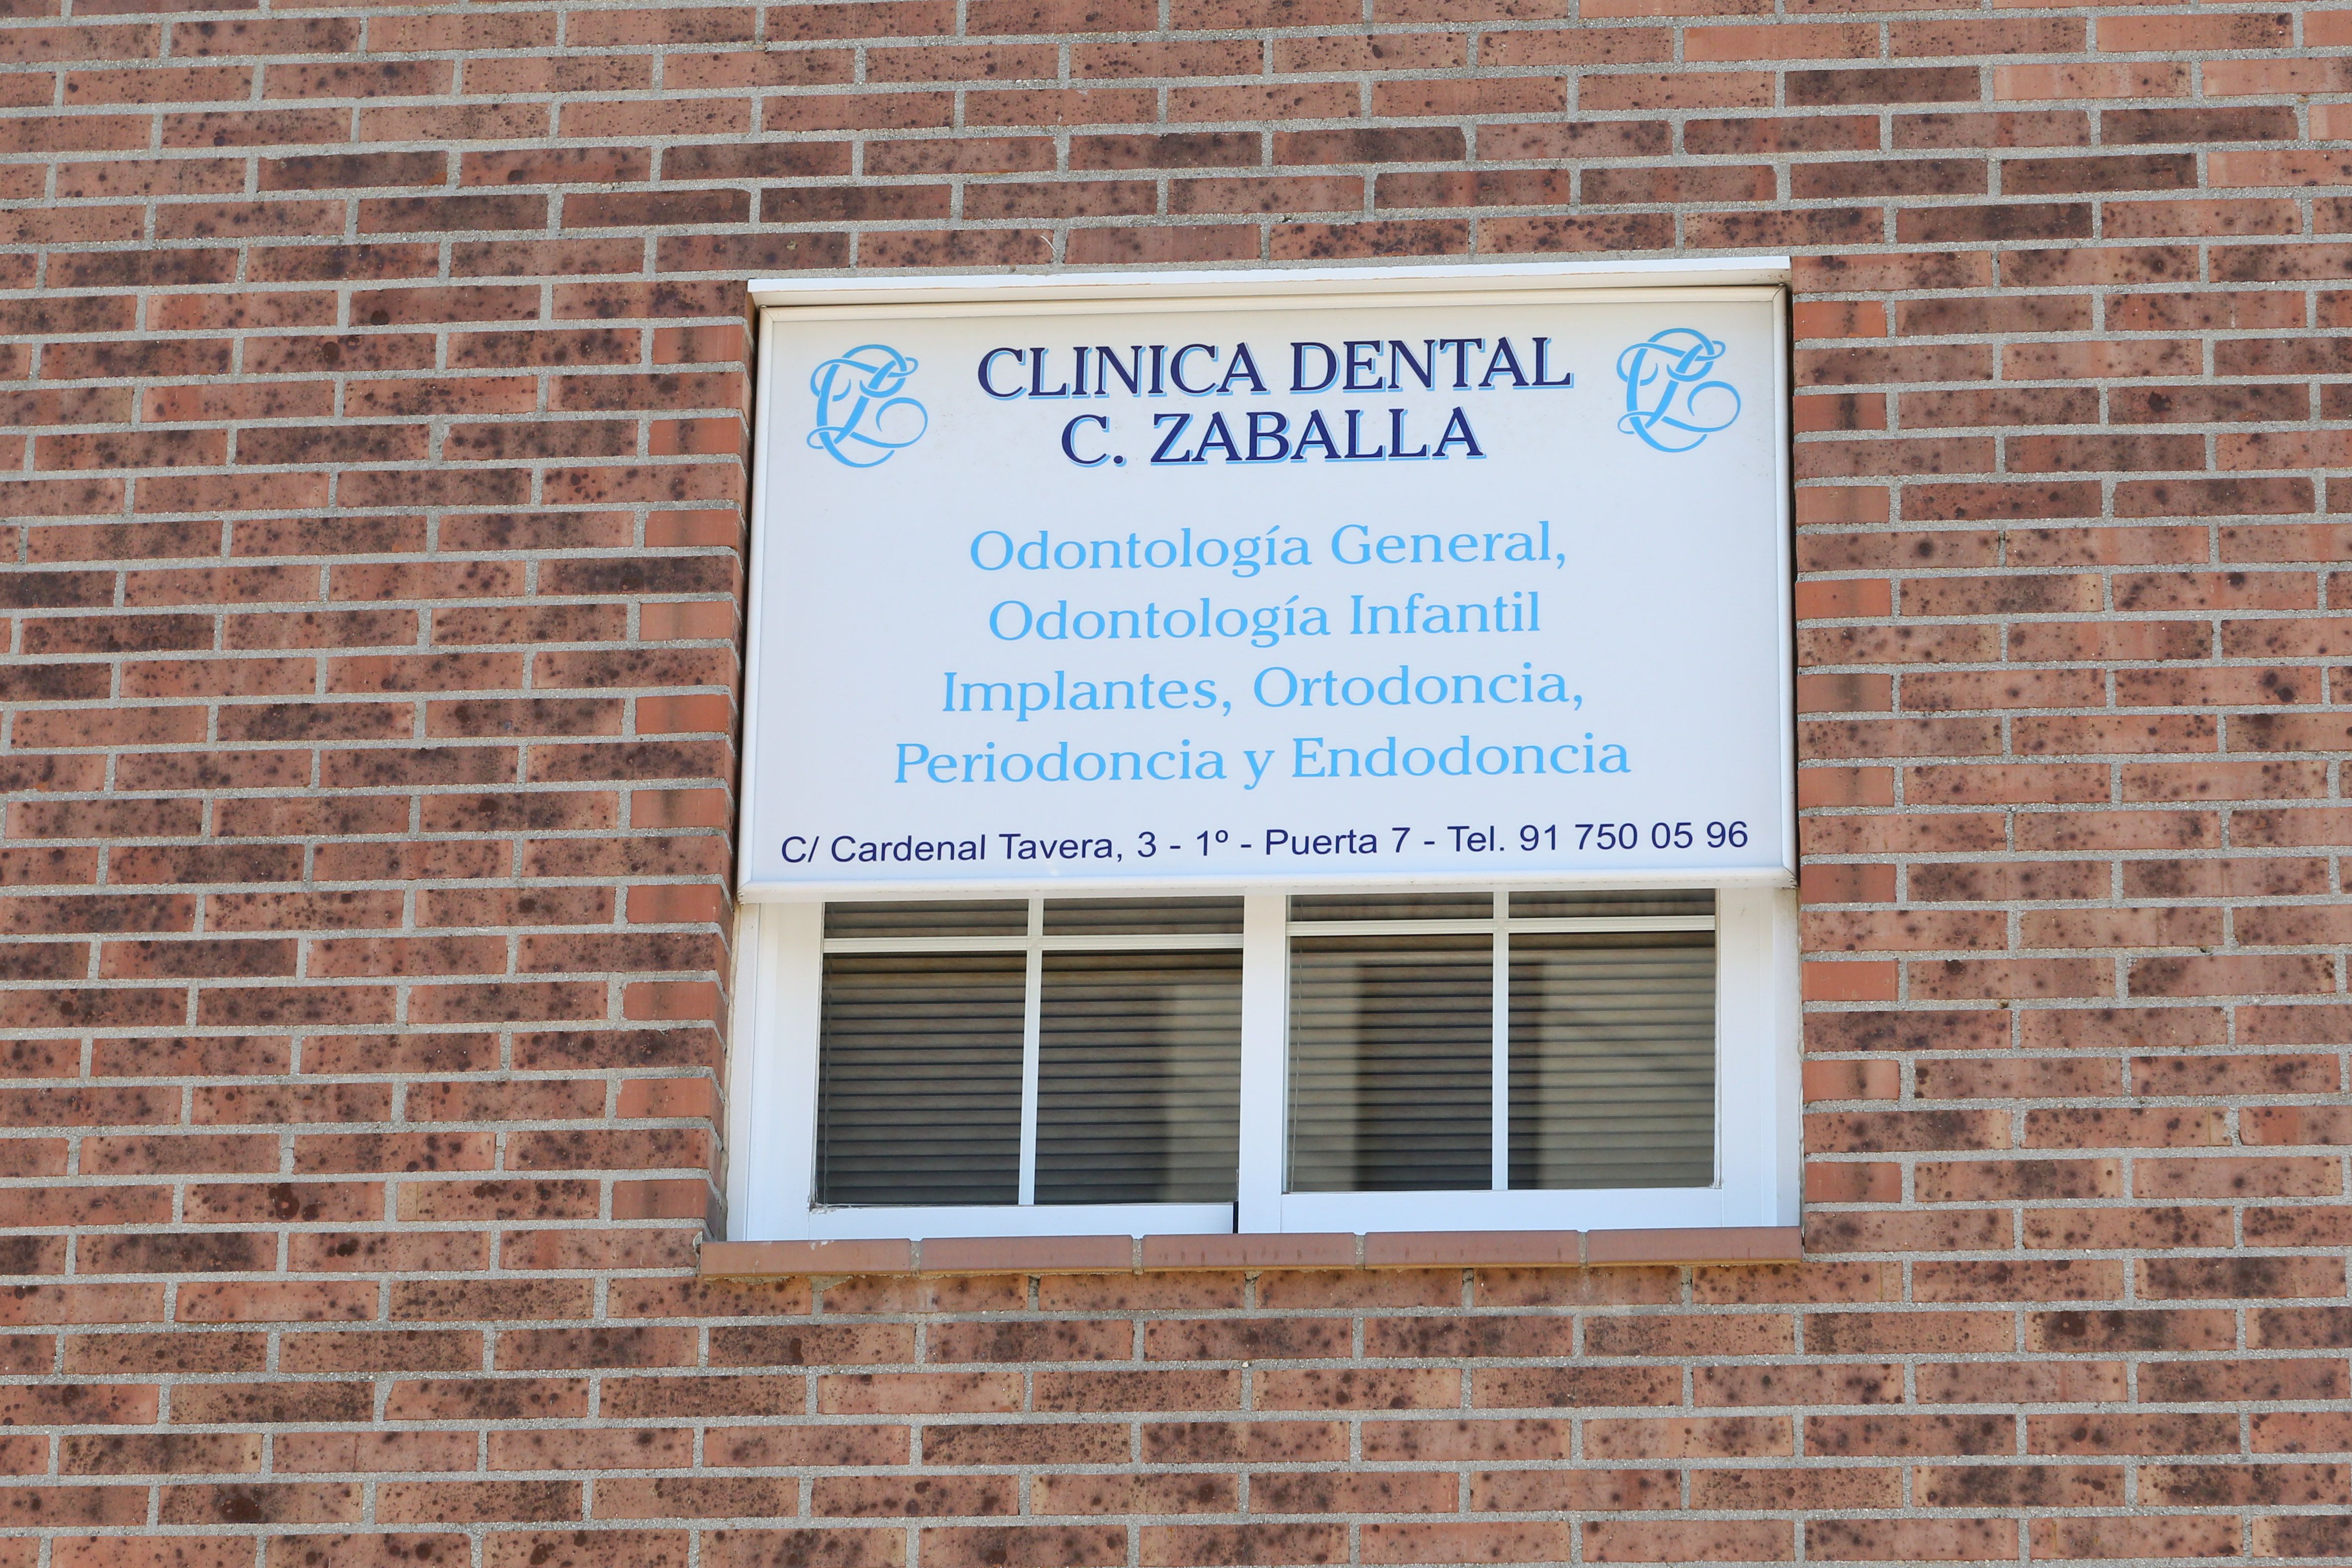 Foto 2 de Dentistas en Madrid | Clínica Dental Dra. Consuelo Zaballa